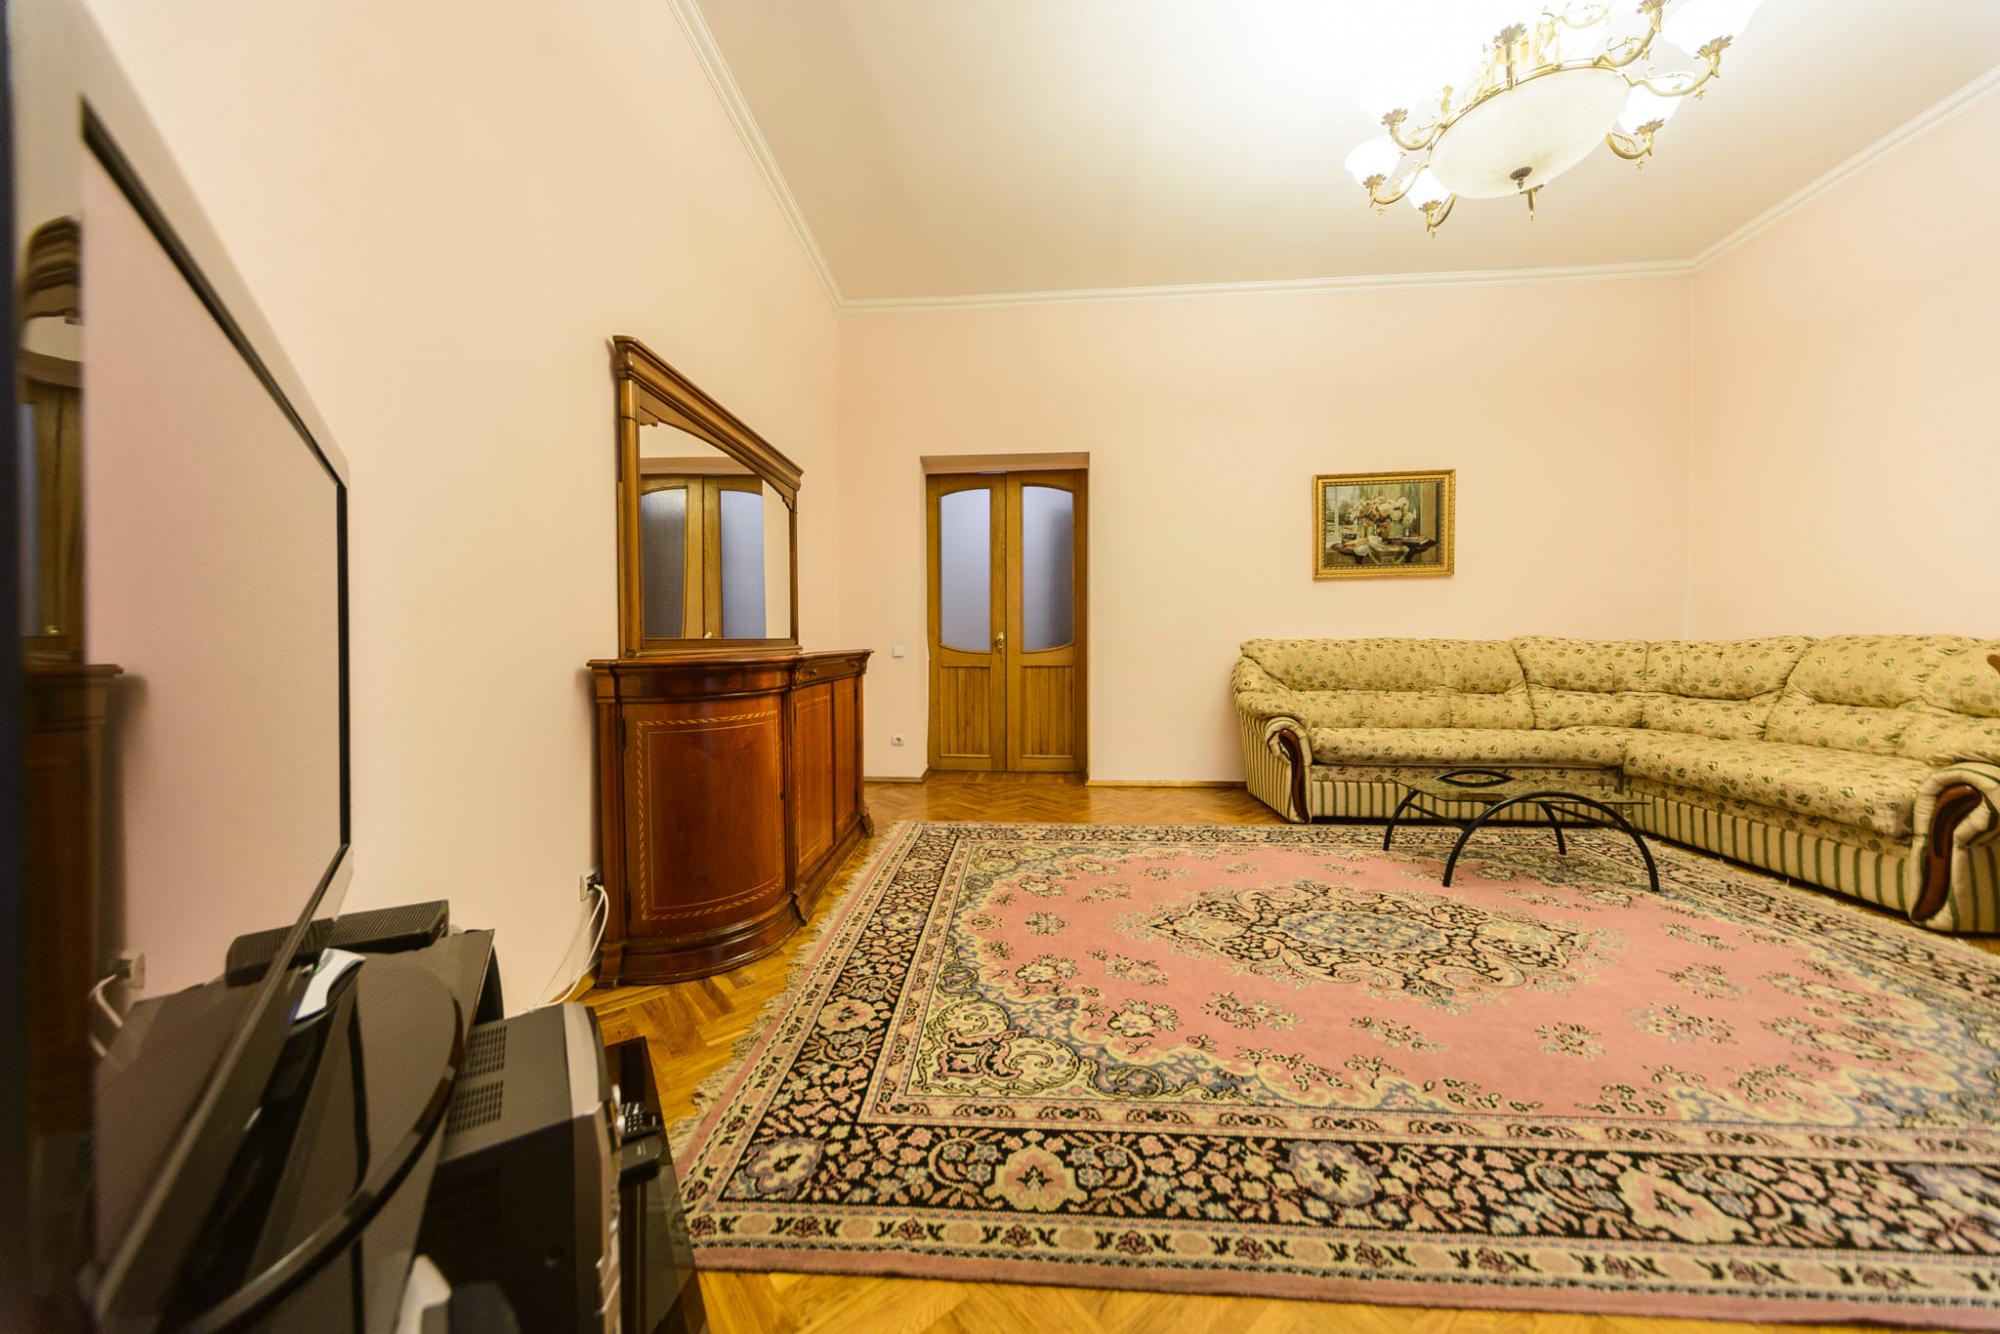 Сколько стоит снять квартиру в Киеве во время войны: цены и условия